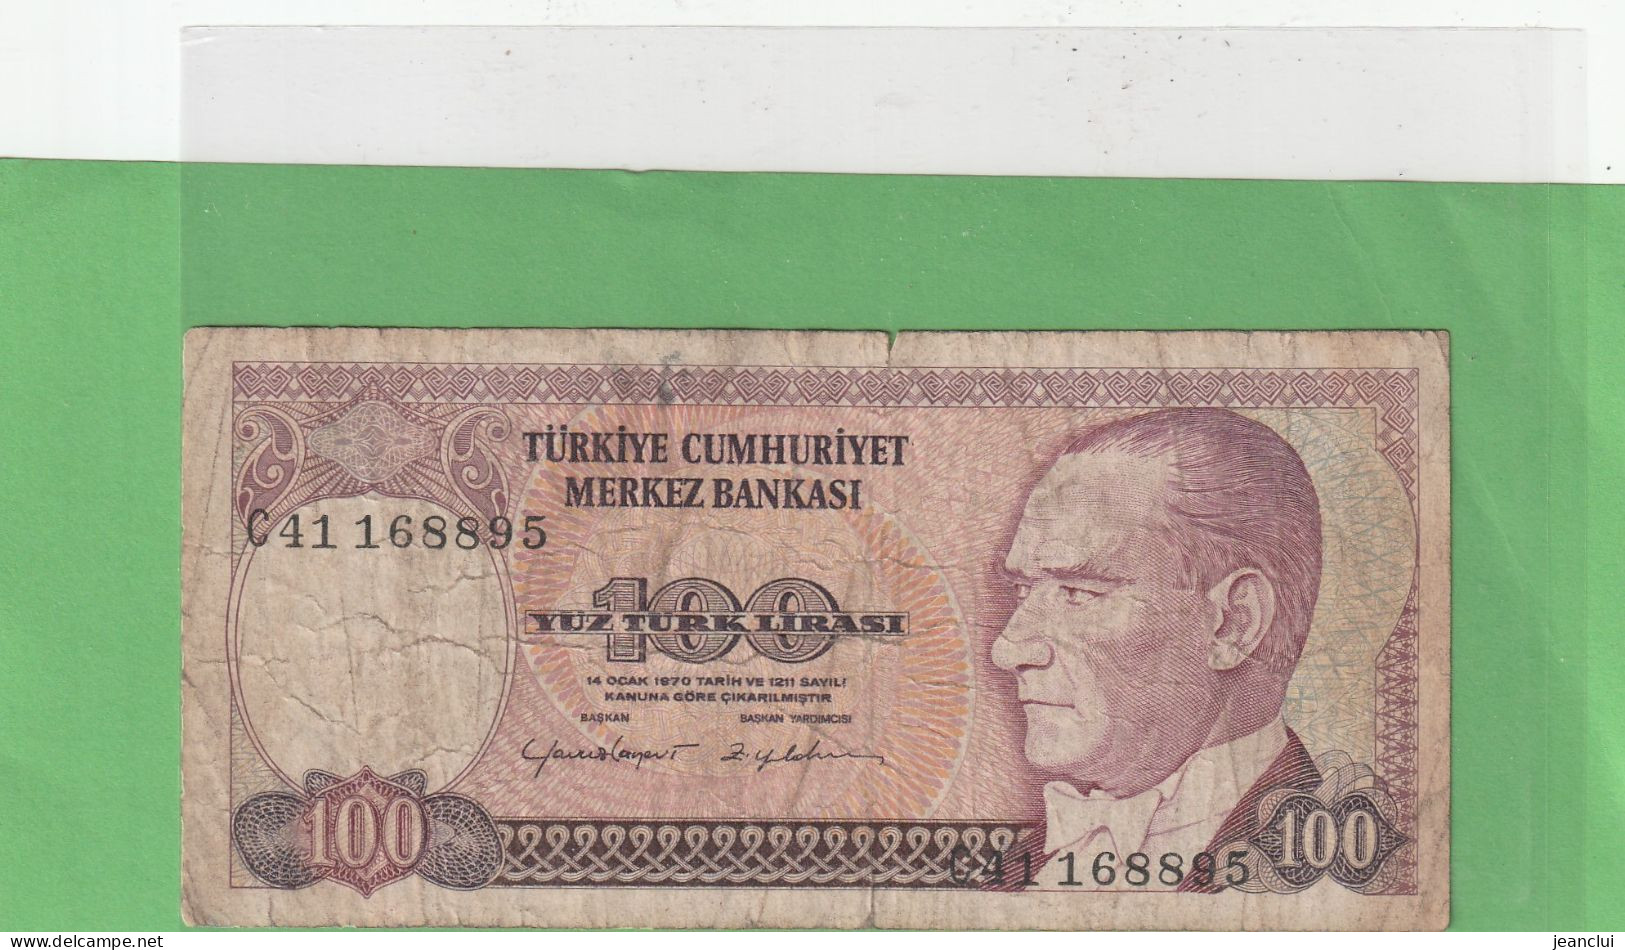 TURKIYE CUMHURIYET MERKEZ BANKASI . 100 LIRA . 14 OCAK 1970  . N°  C41 168895 .  2 SCANNES  .  BILLET USITE - Türkei